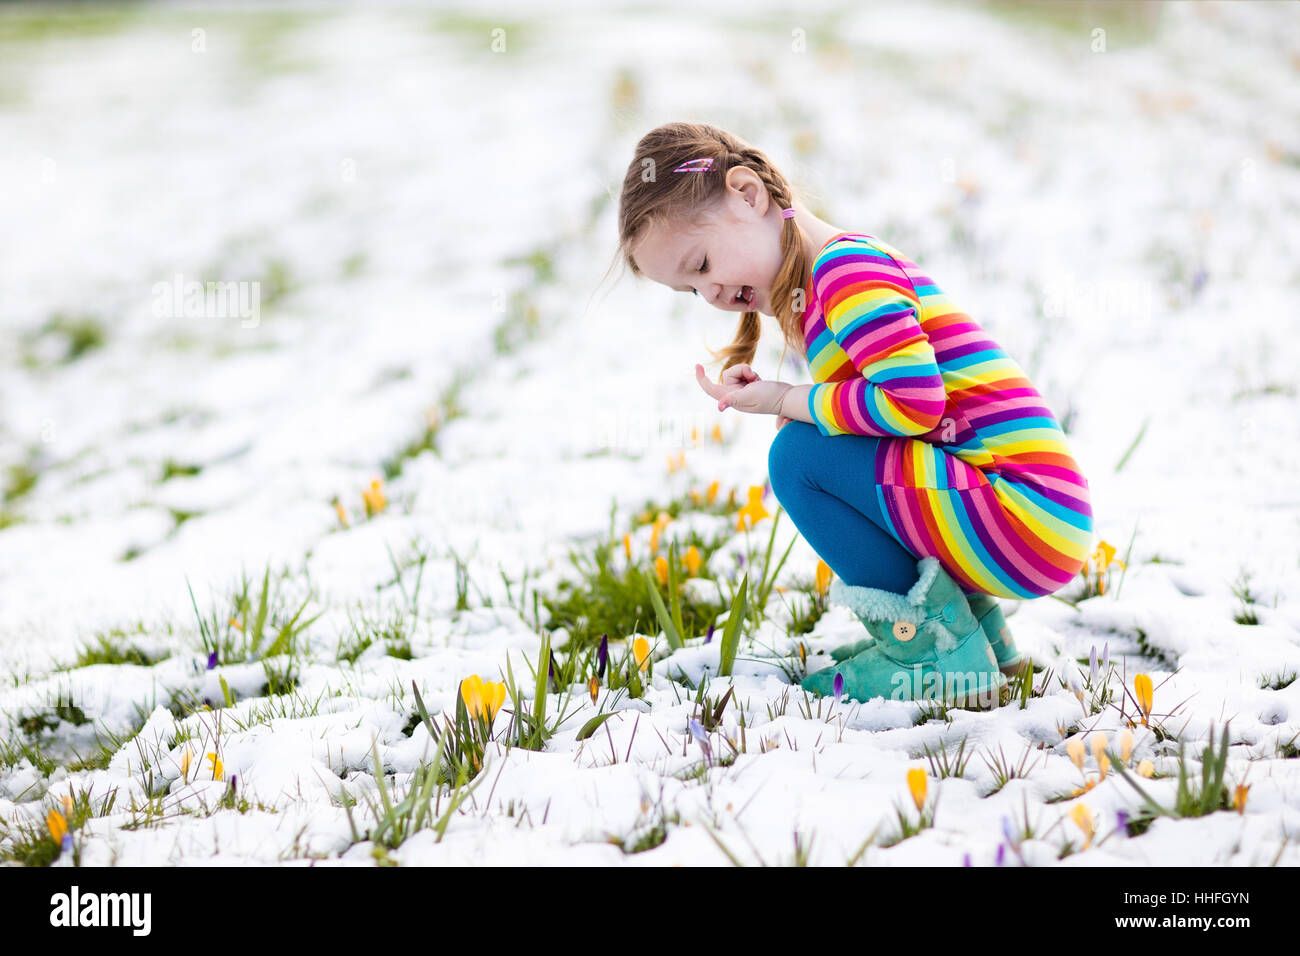 Niedliche kleine Mädchen in bunten Kleid gerade erste Krokus Frühlingsblumen unter Schnee auf sonnigen kalten Tag. Kind Kommissionierung Garten flowe Stockfoto